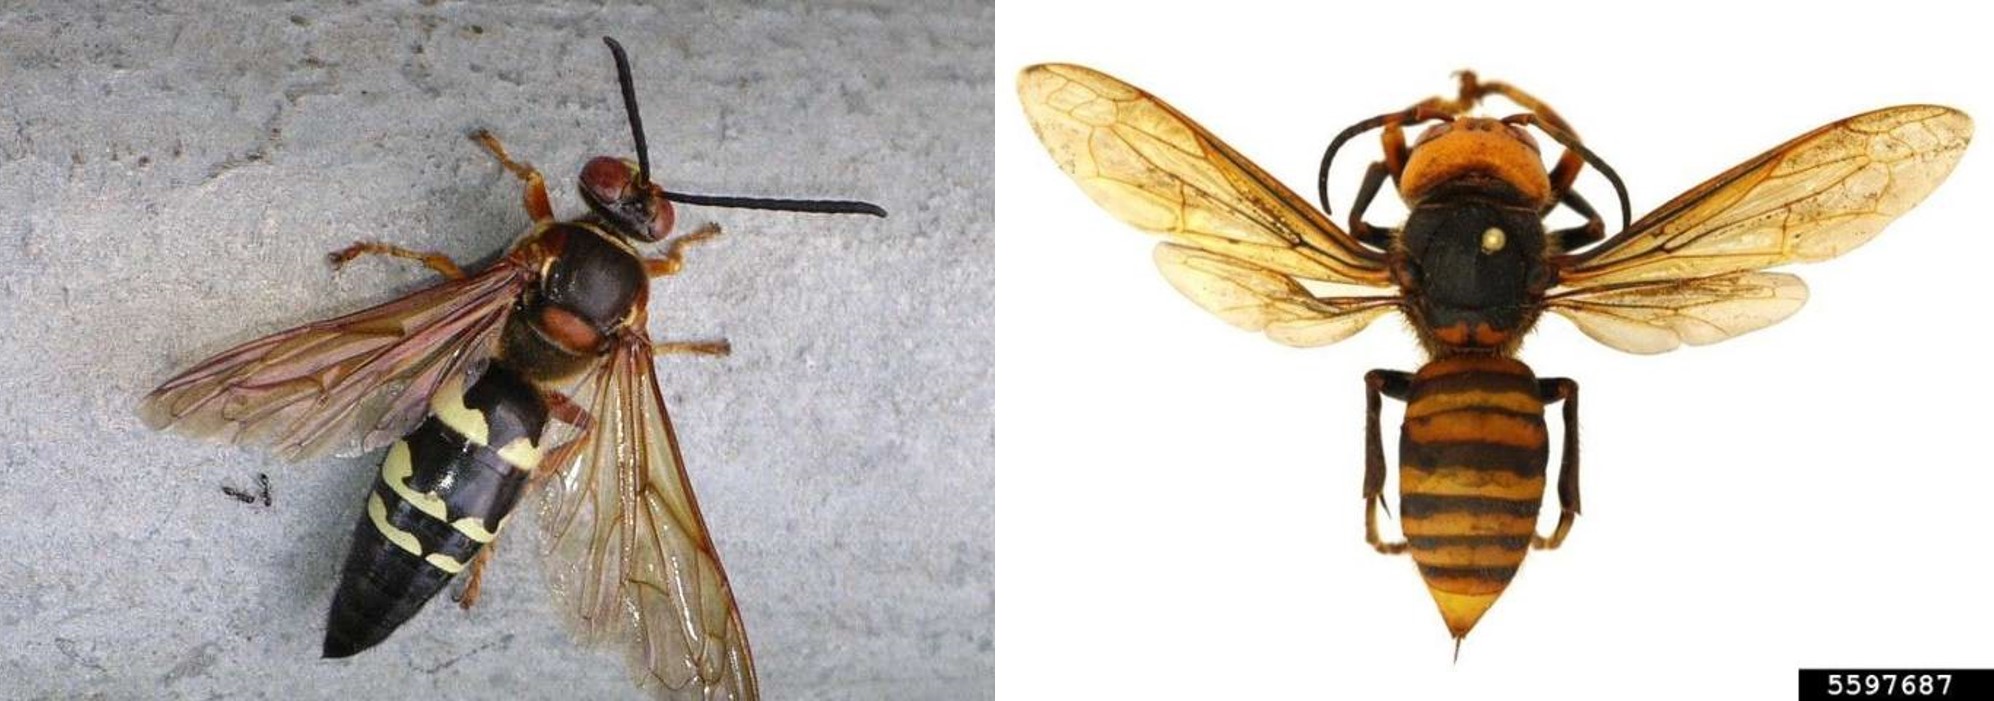 Cicada Killer vs Asian Giant Hornet